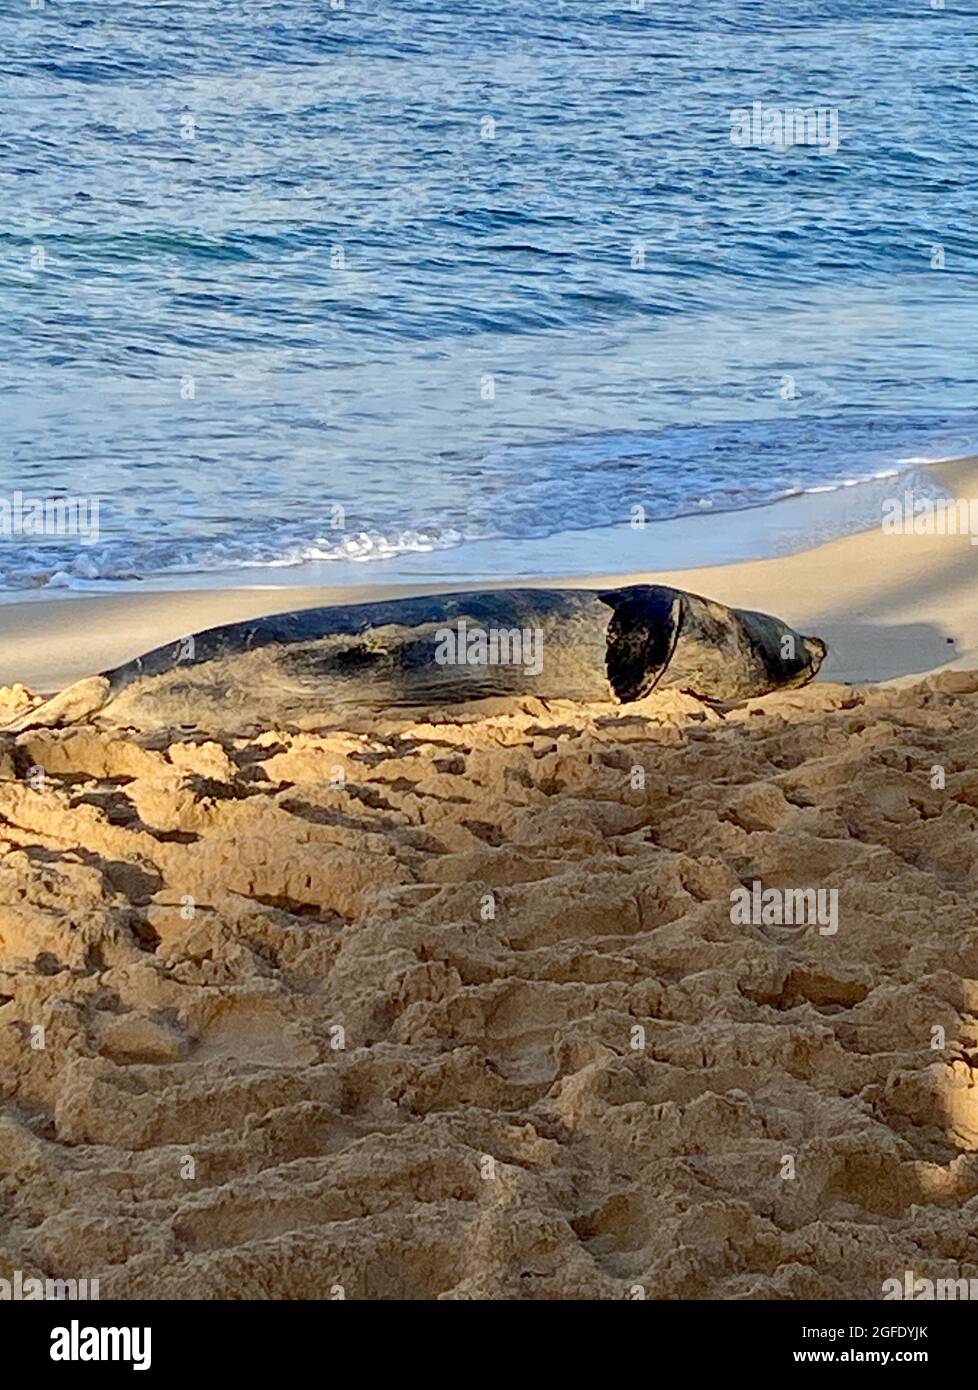 Il Monk Seal Hawaiiano in via di estinzione si trova sulla spiaggia di Kauai. La foca monaca hawaiana è una delle specie di foca più minacciate al mondo. Foto Stock